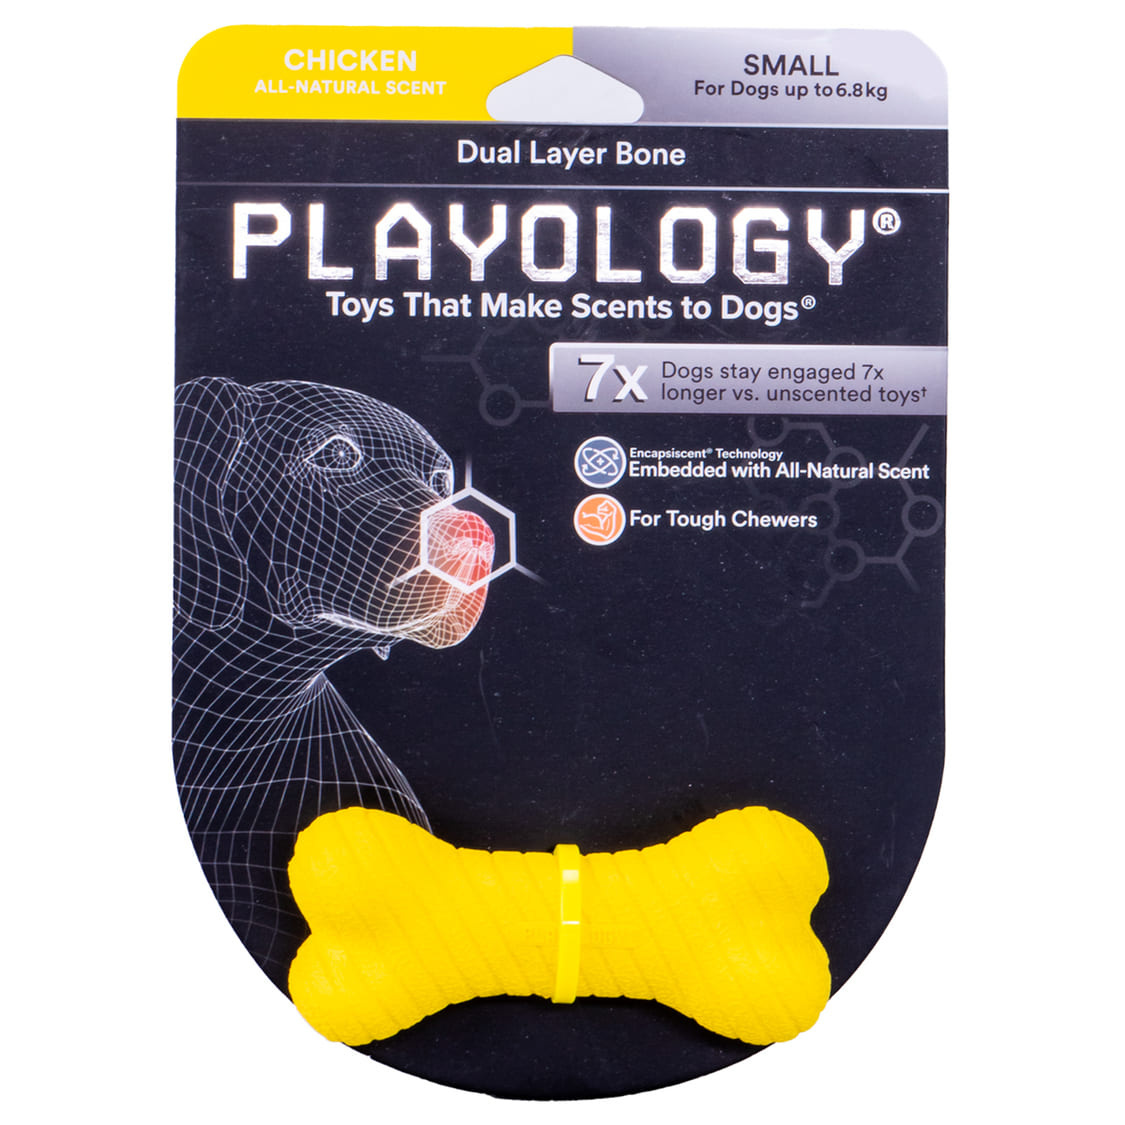 Playology двухслойная жевательная косточка Playology DUAL LAYER BONE для собак средних и крупных пород с ароматом курицы, цвет желтый (M)